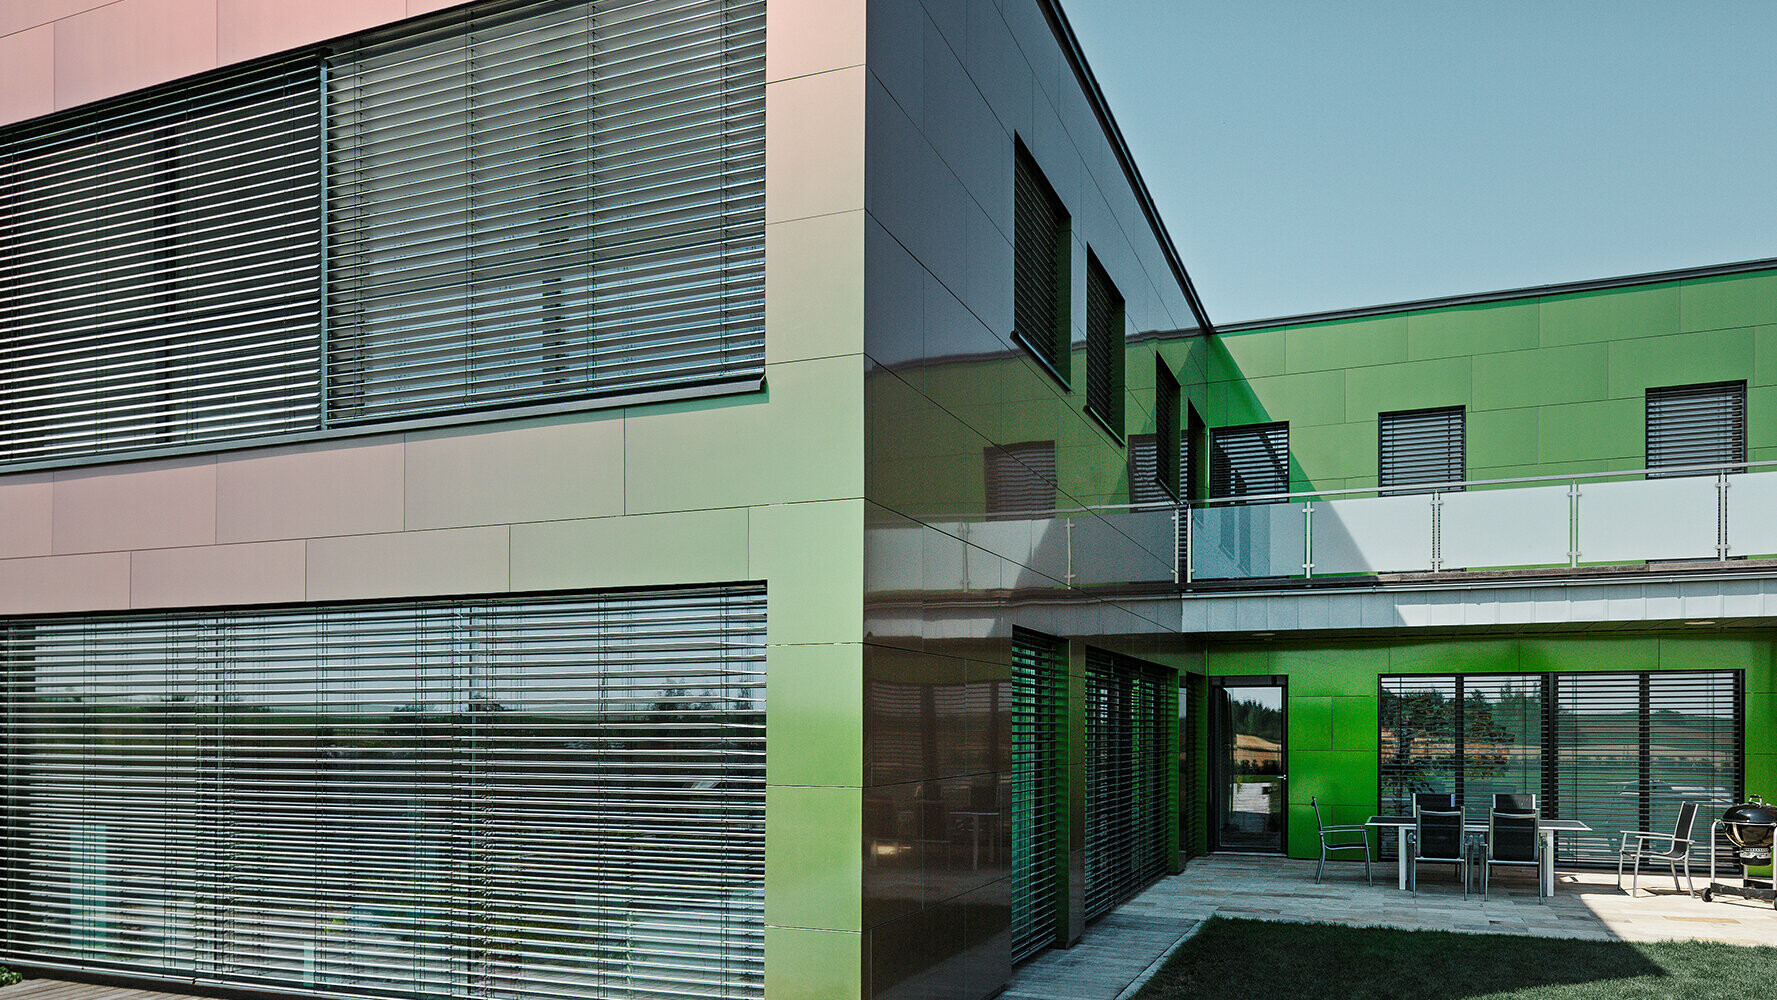 Barva fasády tohoto obytného domu z kompozitních desek se  v závislosti na dopadu světla a perpektivě pohledu mění z hnědé na zelenou nebo  tmavě fialovou   